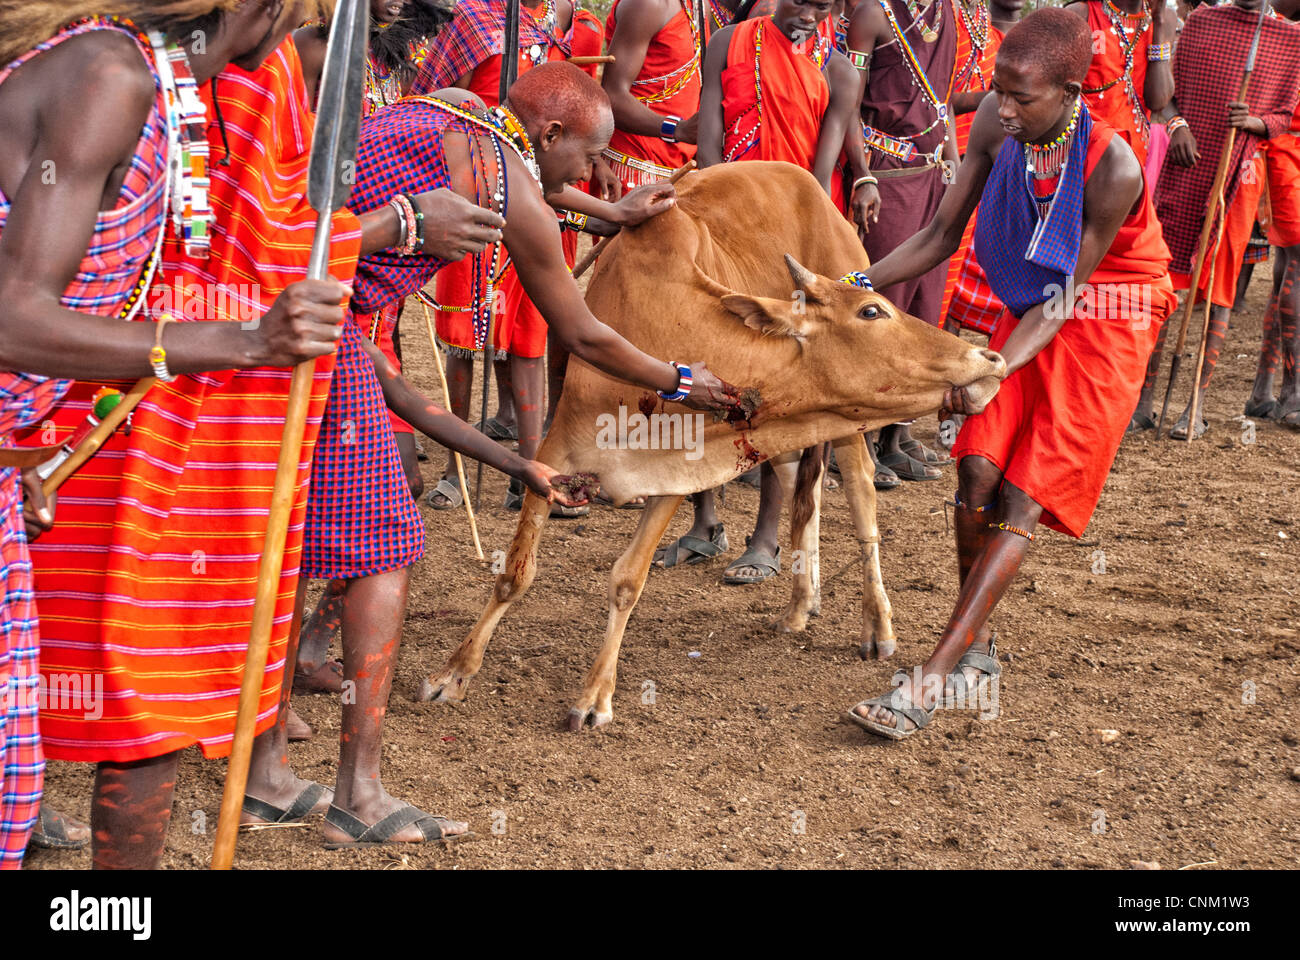 Masai gli uomini sono intaccare la vena giugulare di una mucca per ottenere il sangue. Esso è miscelato con latte per preparare una bevanda rituale. Foto Stock